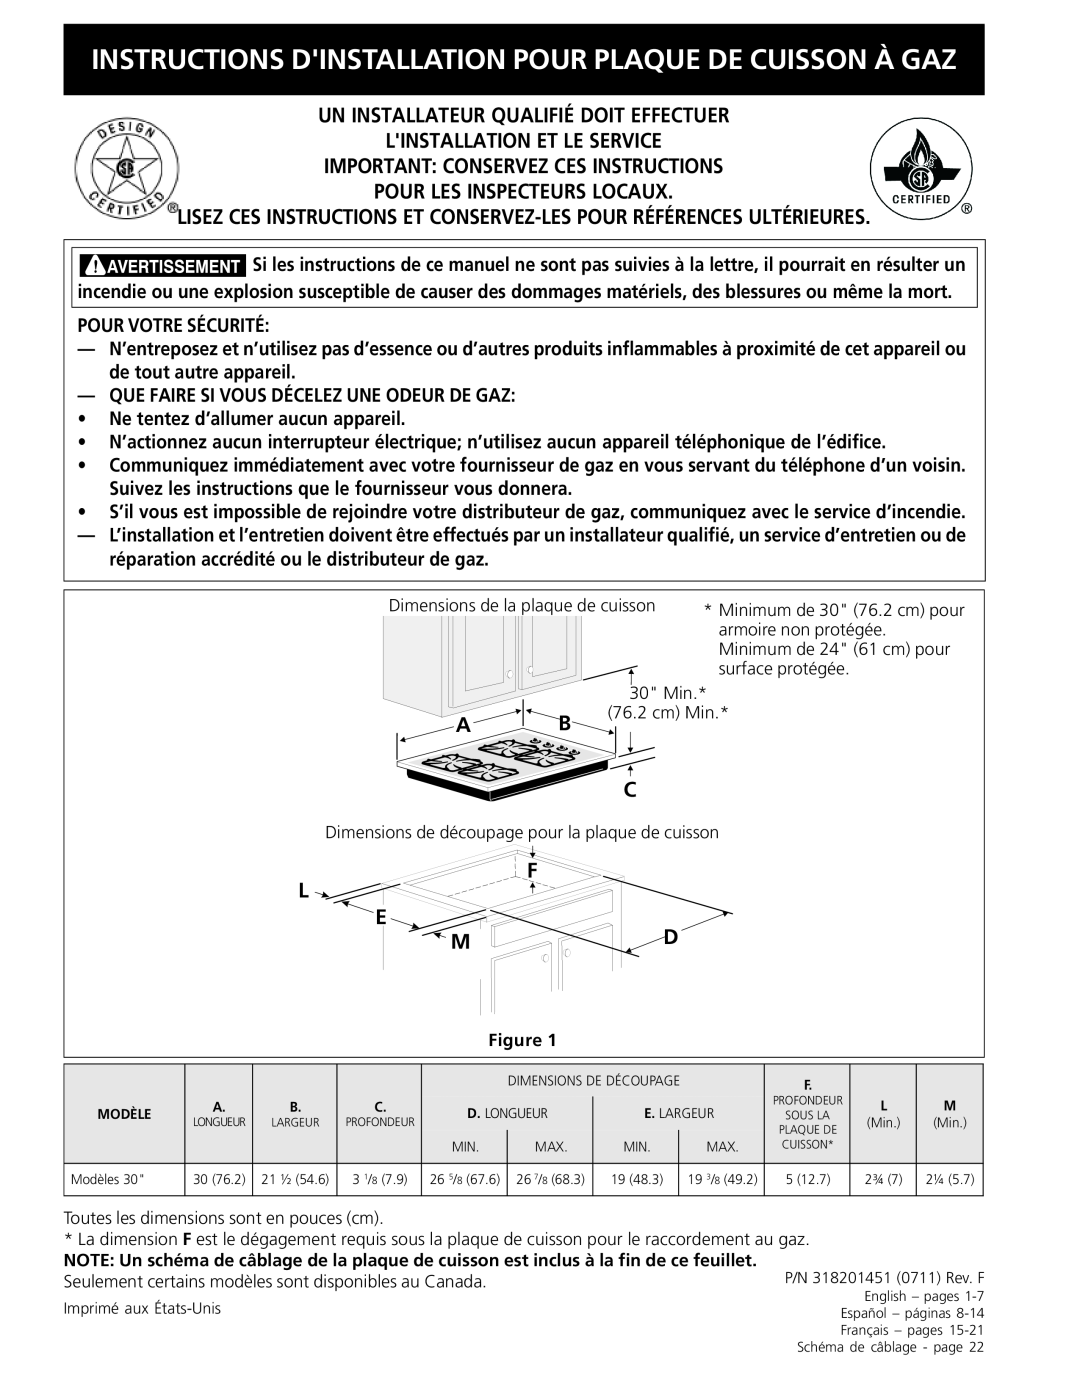 Frigidaire 318201451 dimensions Instructions Dinstallation Pour Plaque De Cuisson À Gaz, L E M 